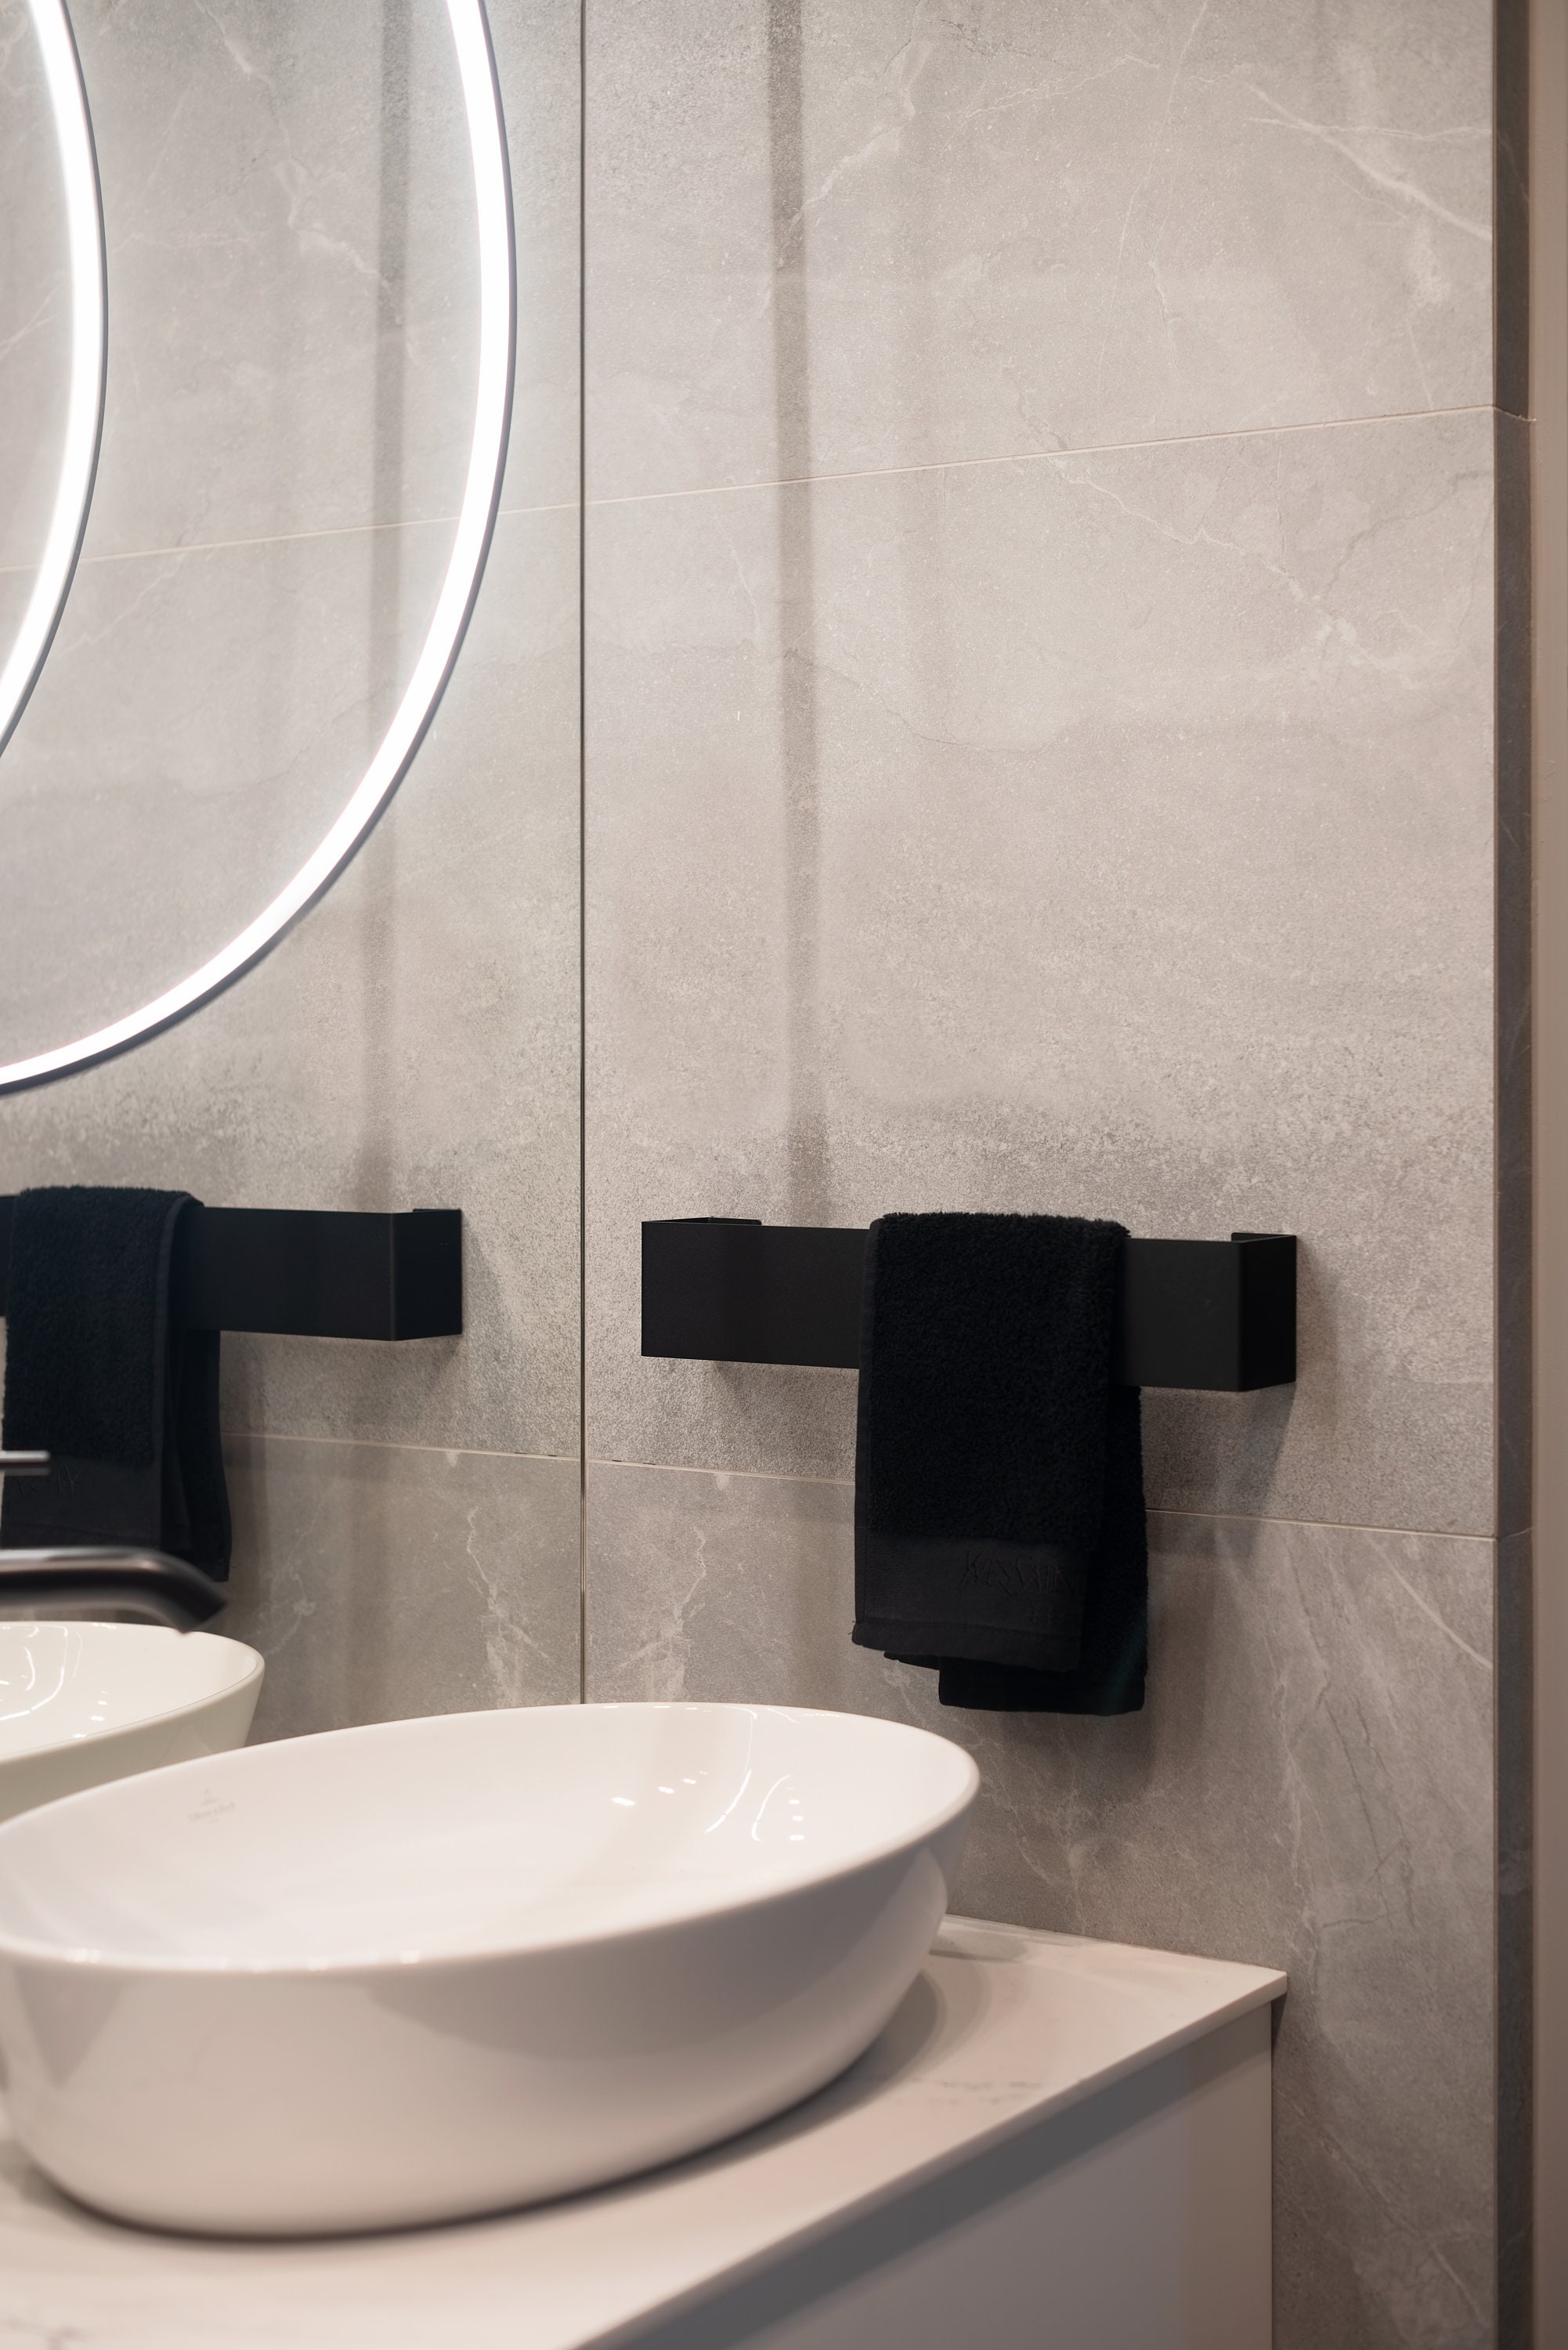 Porta asciugamani doppio bianco per bagno moderno, accessori bagno moderno  bianco, bagno dabstory design RICOBI -  Italia